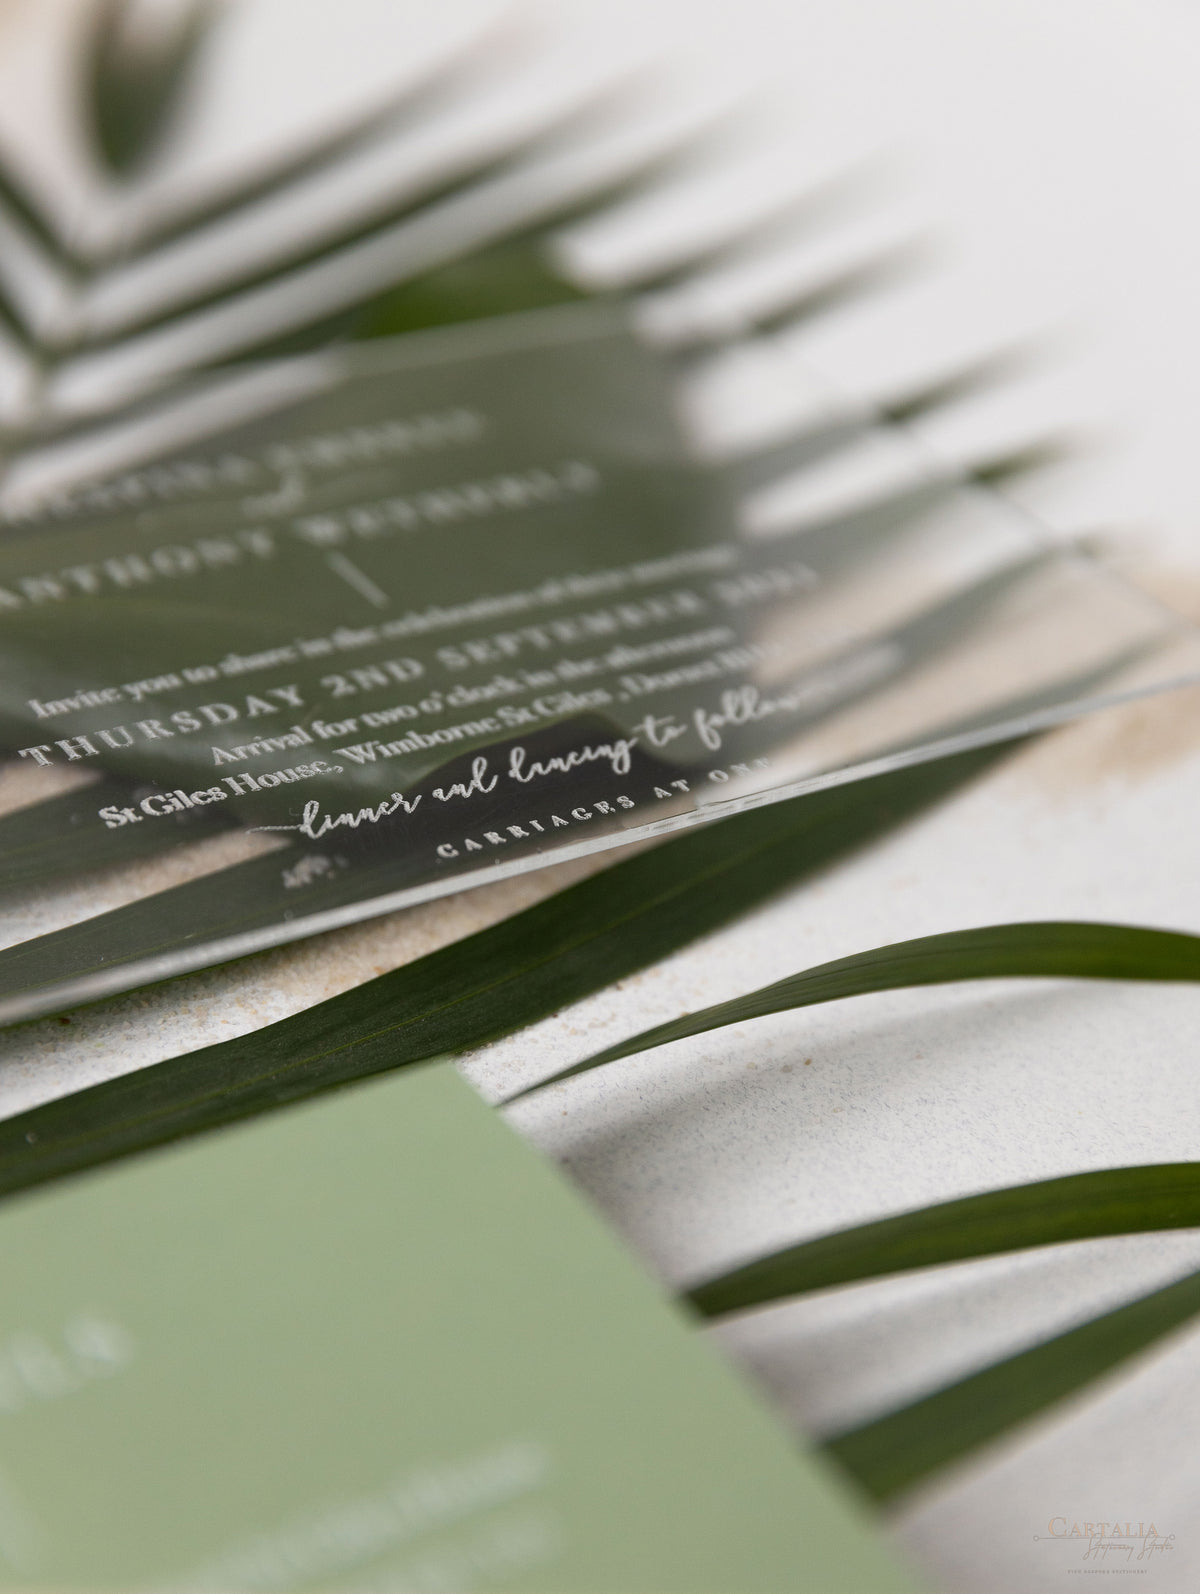 Sage Green Palm FearS Invitation Suite de mariage | Commission sur mesure D&A